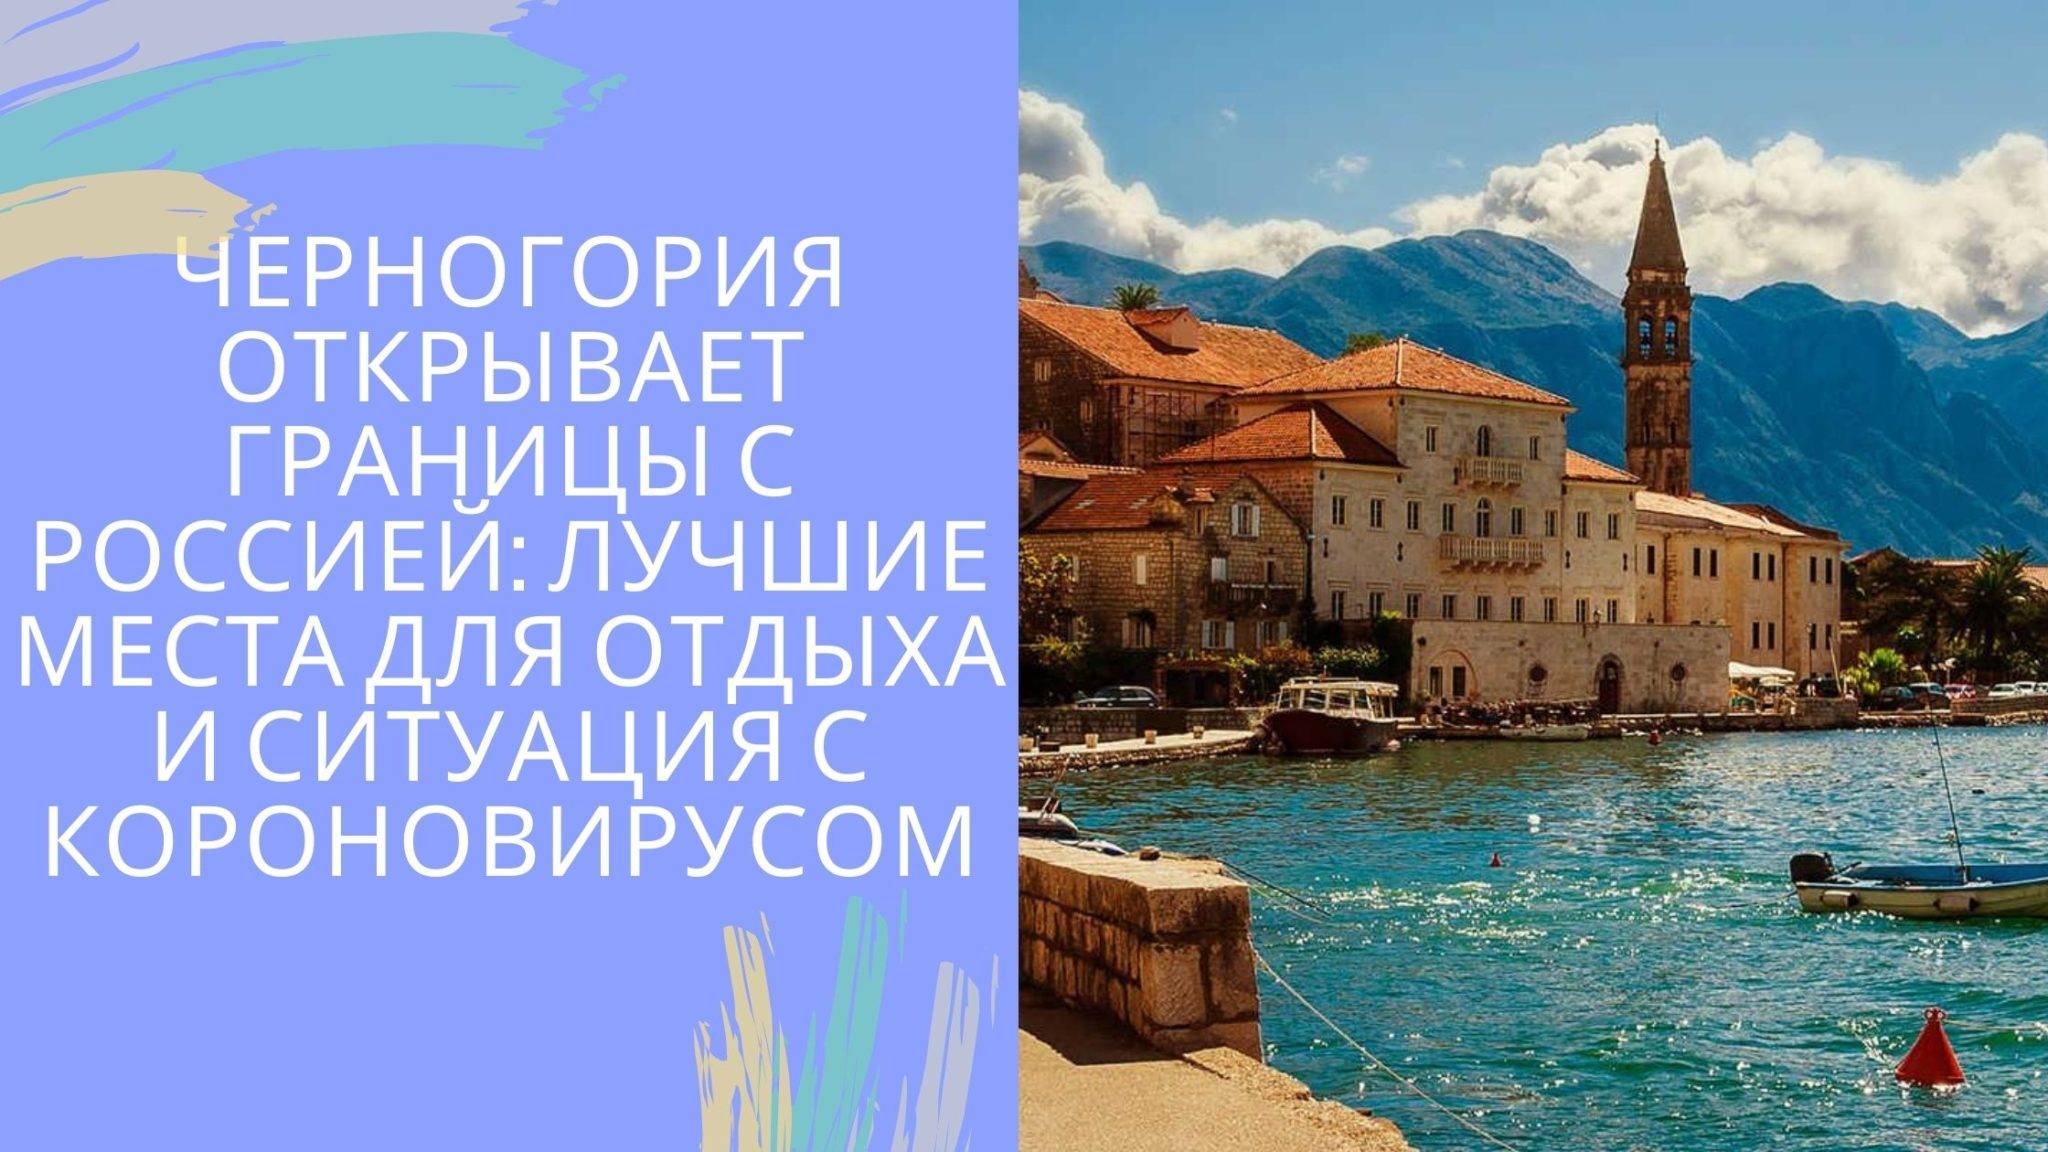 Виза в черногорию для россиян в 2021 году: нужна ли, правила безвизового въезда, оформление визы